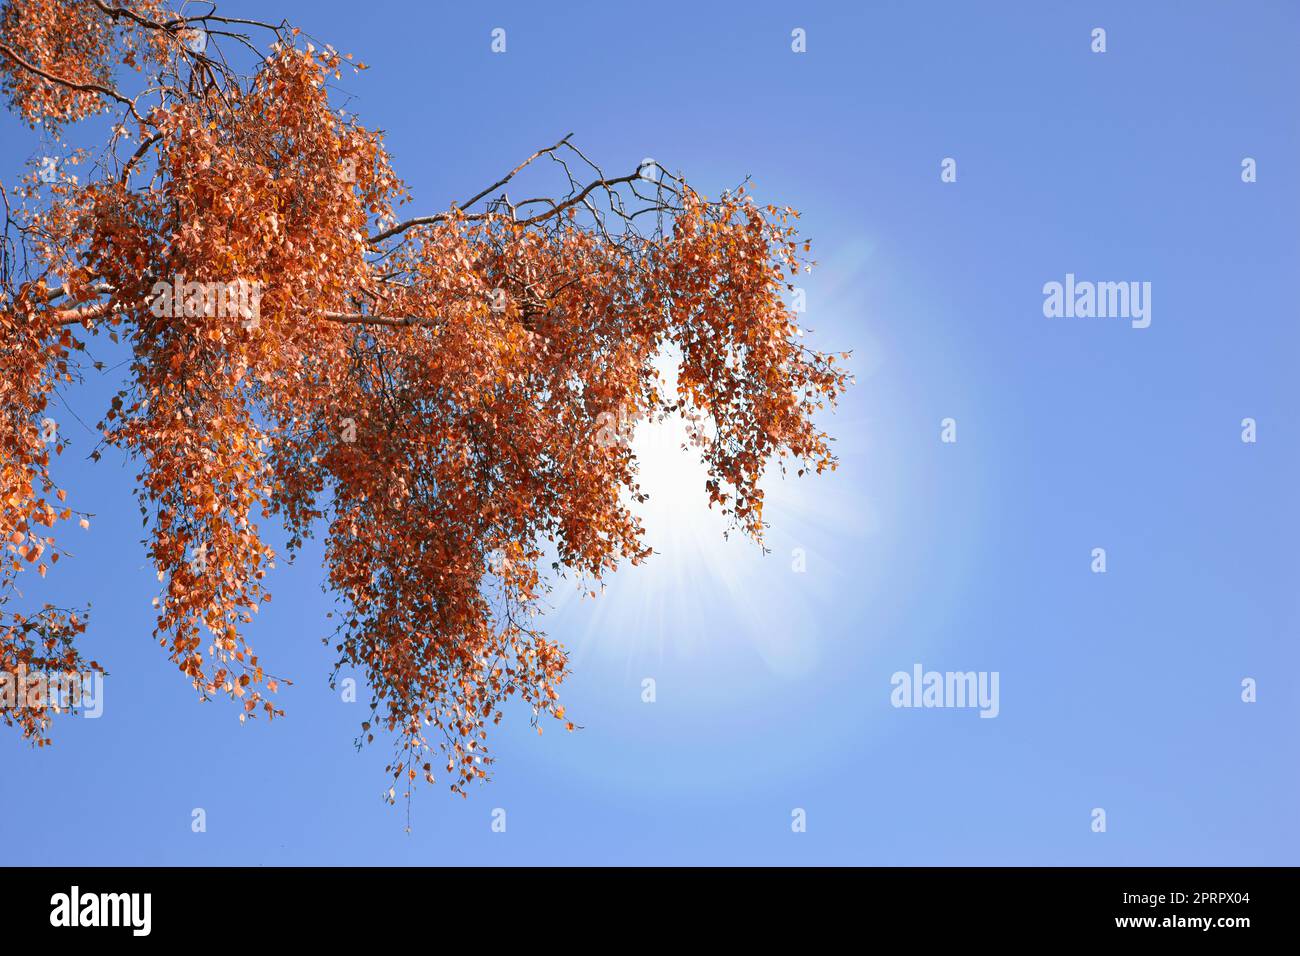 Herbst in den Farben des Herbstes. Ein Foto von roten Herbstblättern im Sonnenlicht. Stockfoto